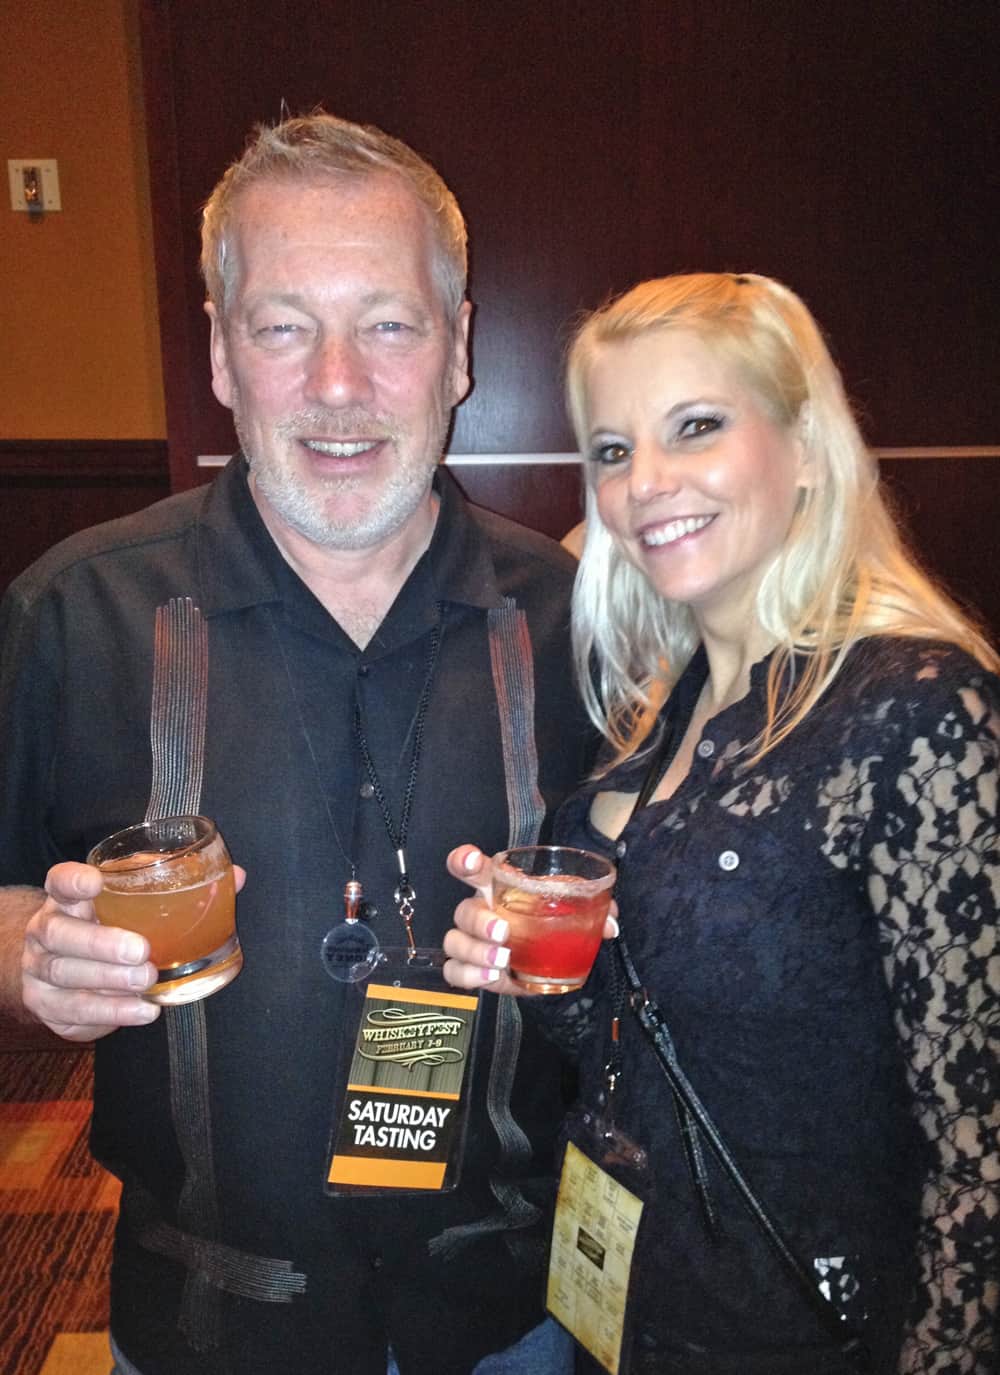 WhiskeyFest2014 - ADCook and Rhonda, Las Vegas, NV